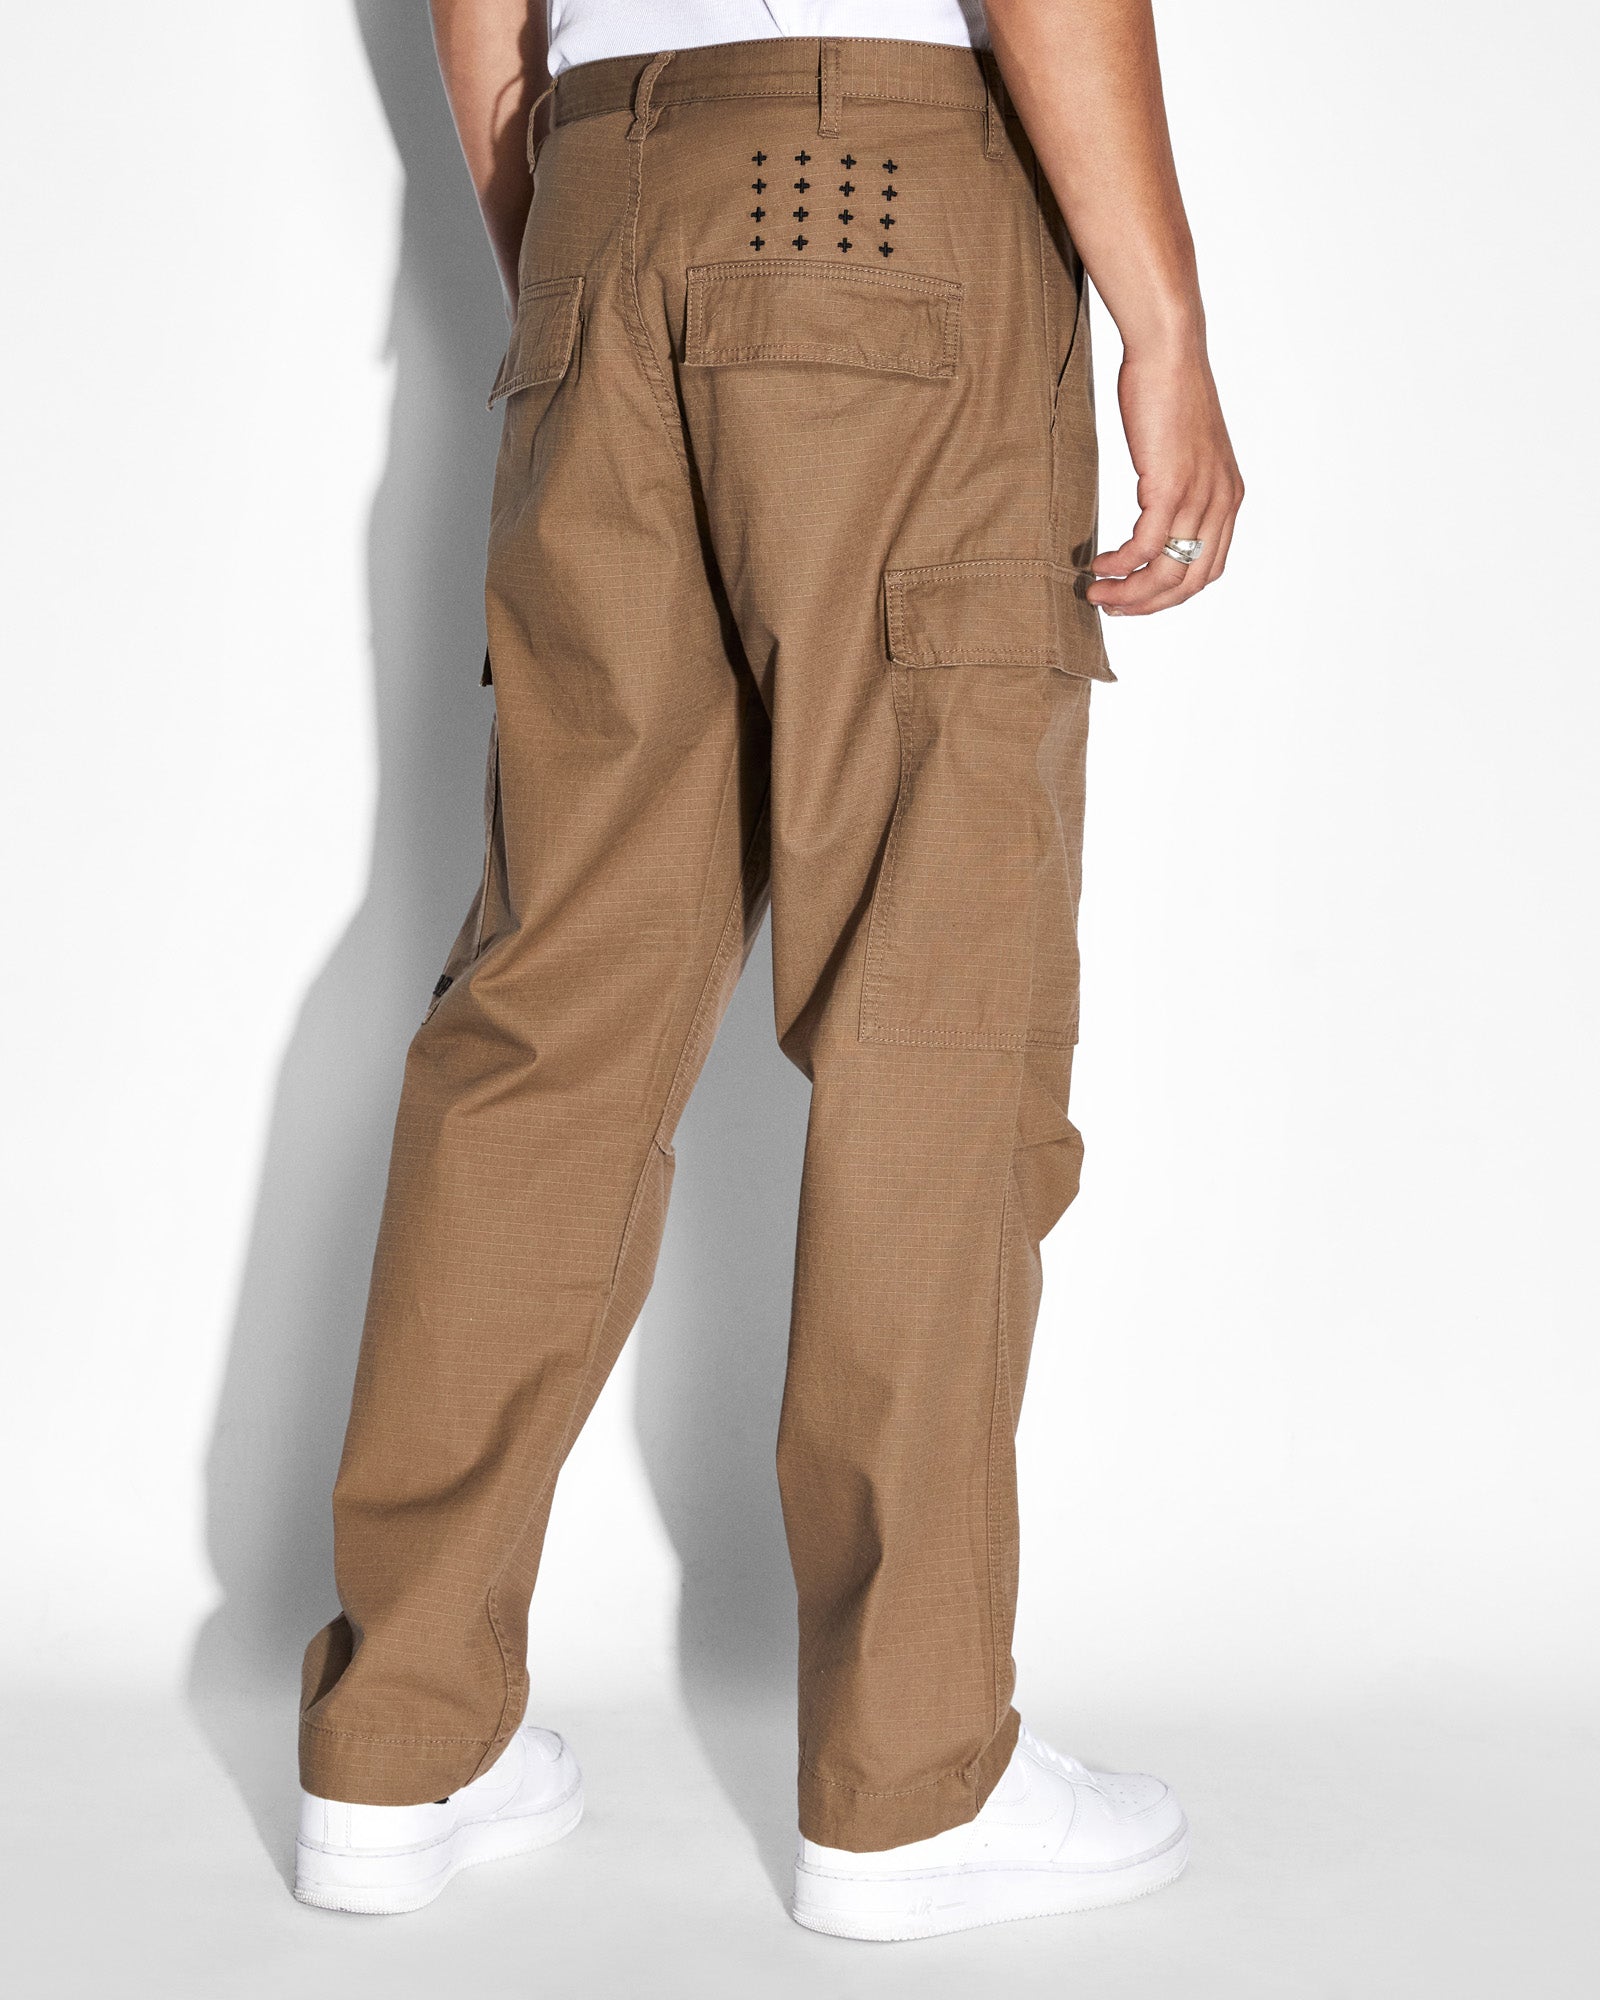 Men's Baggy Cargo Pant | Men's Bottoms | Abercrombie.com